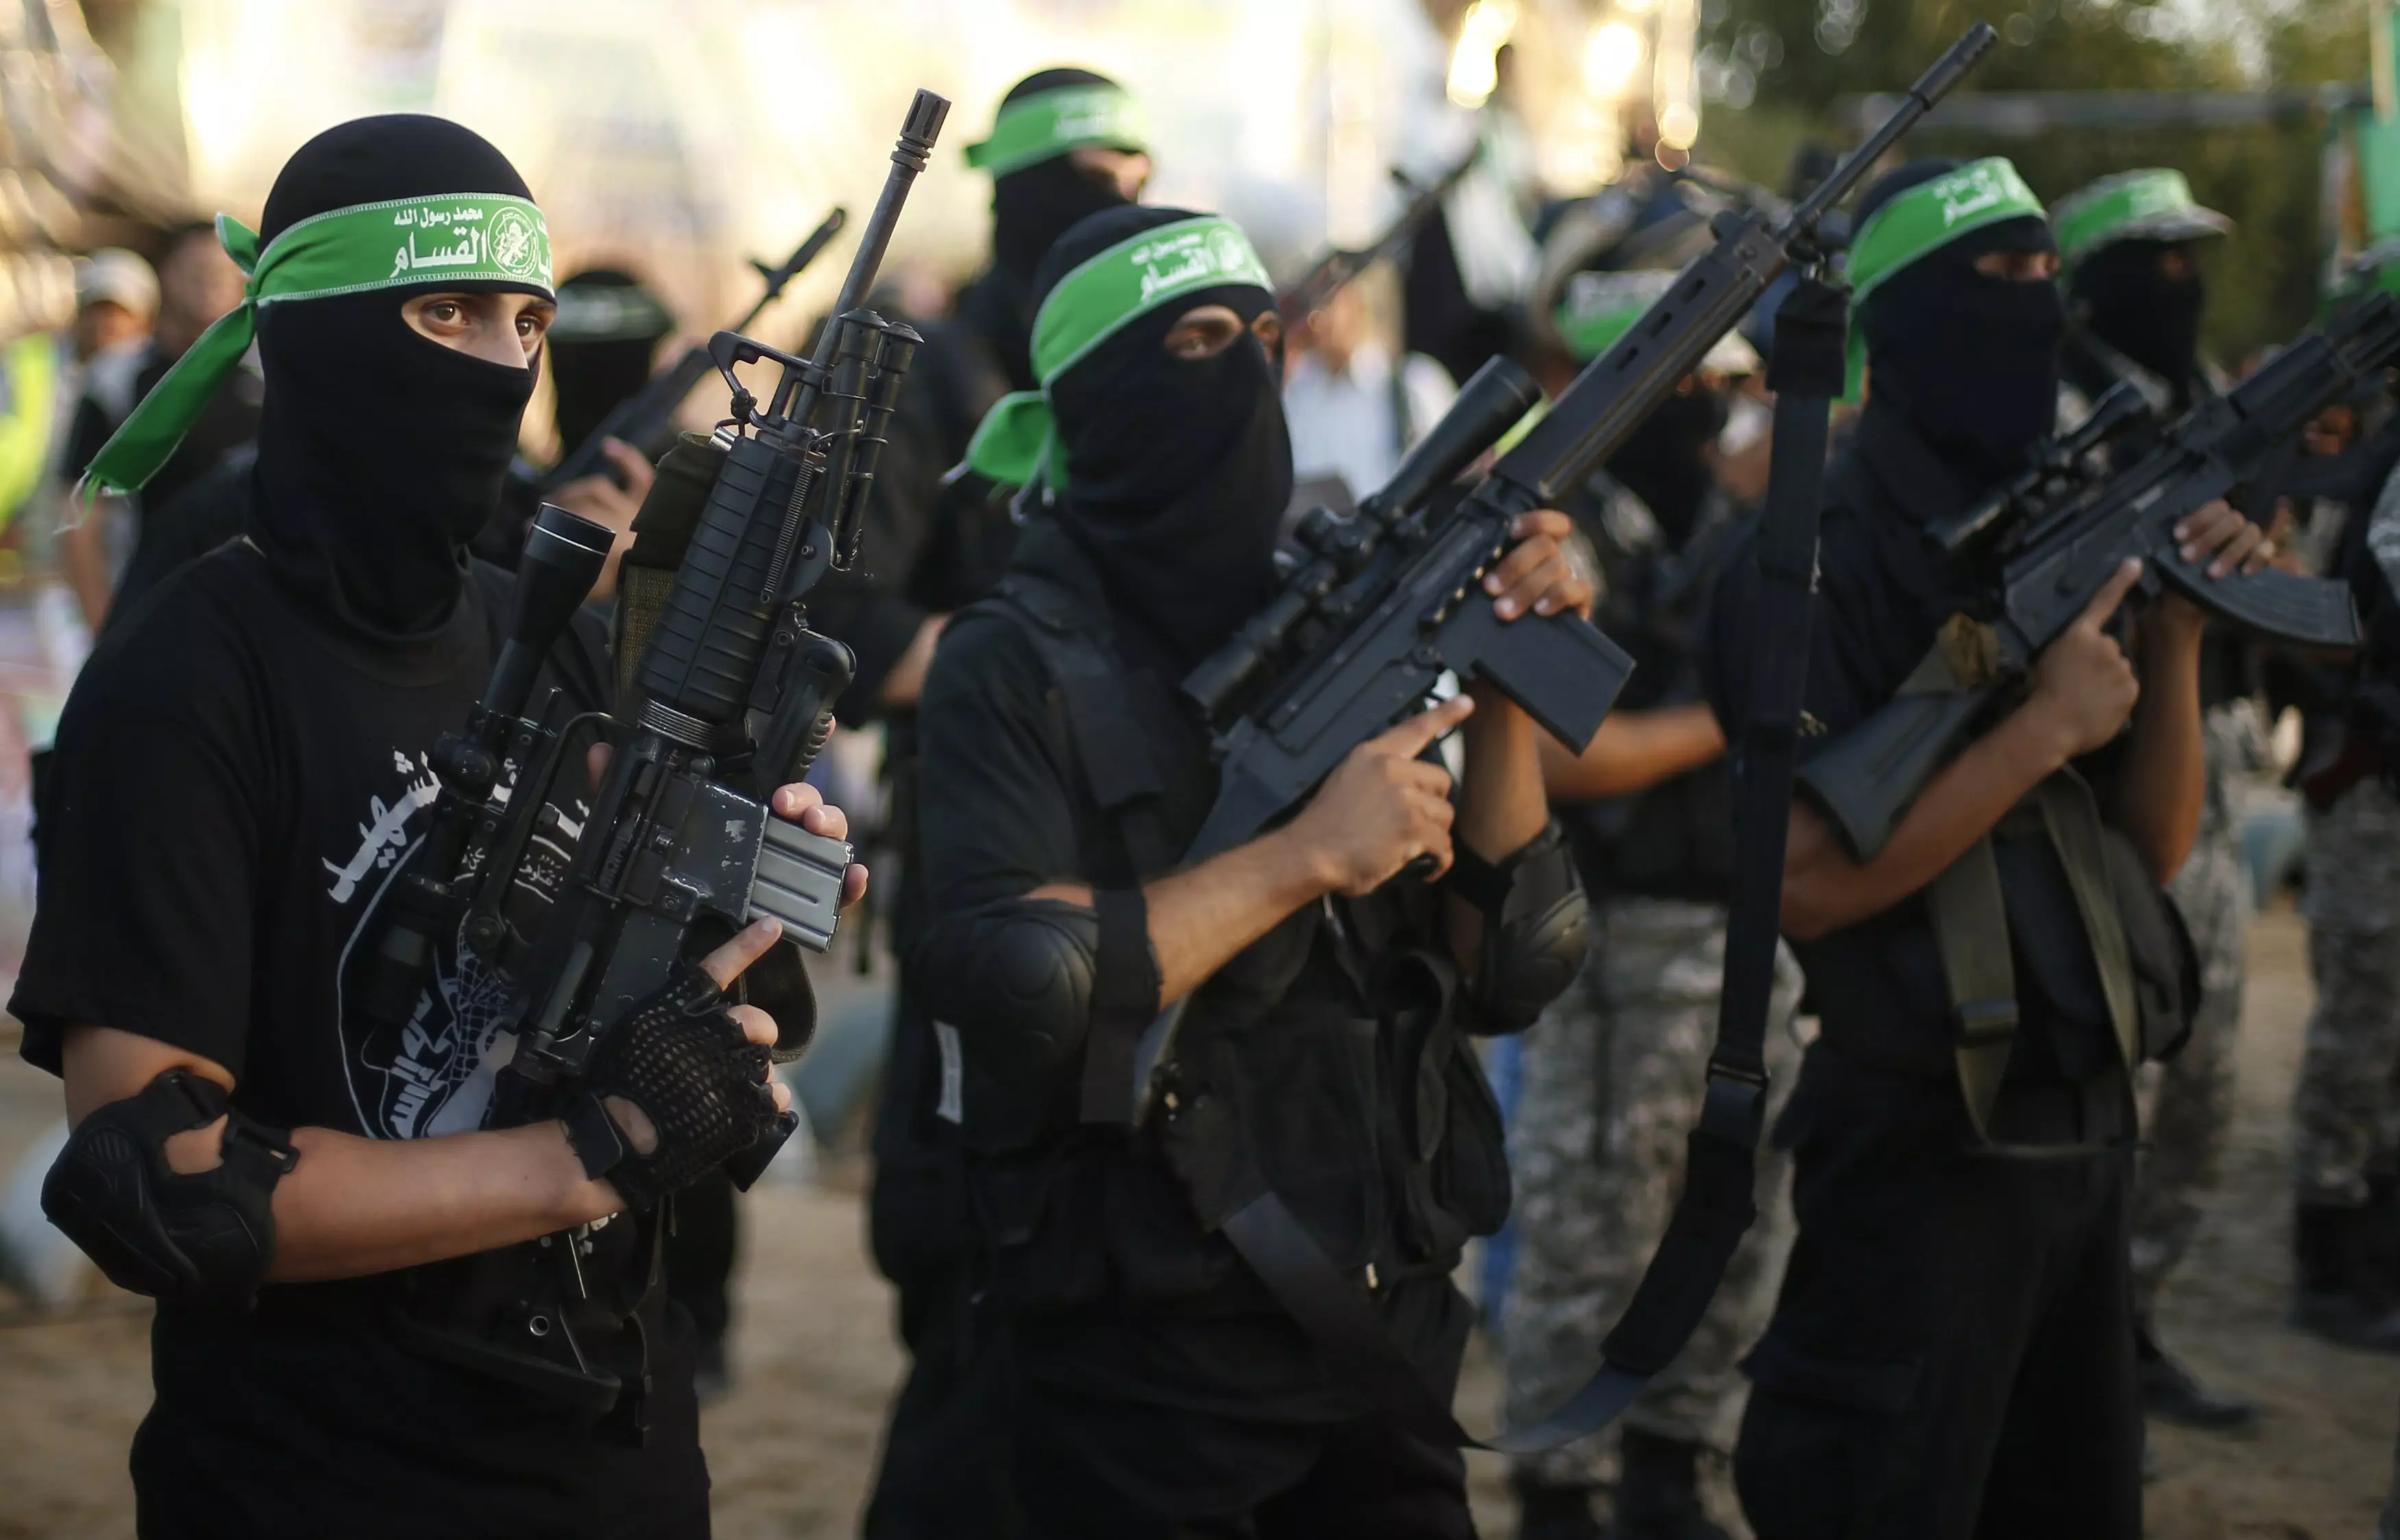 "עמנו יהיה מוכן לכל עימות עם הכיבוש". לוחמי חמאס